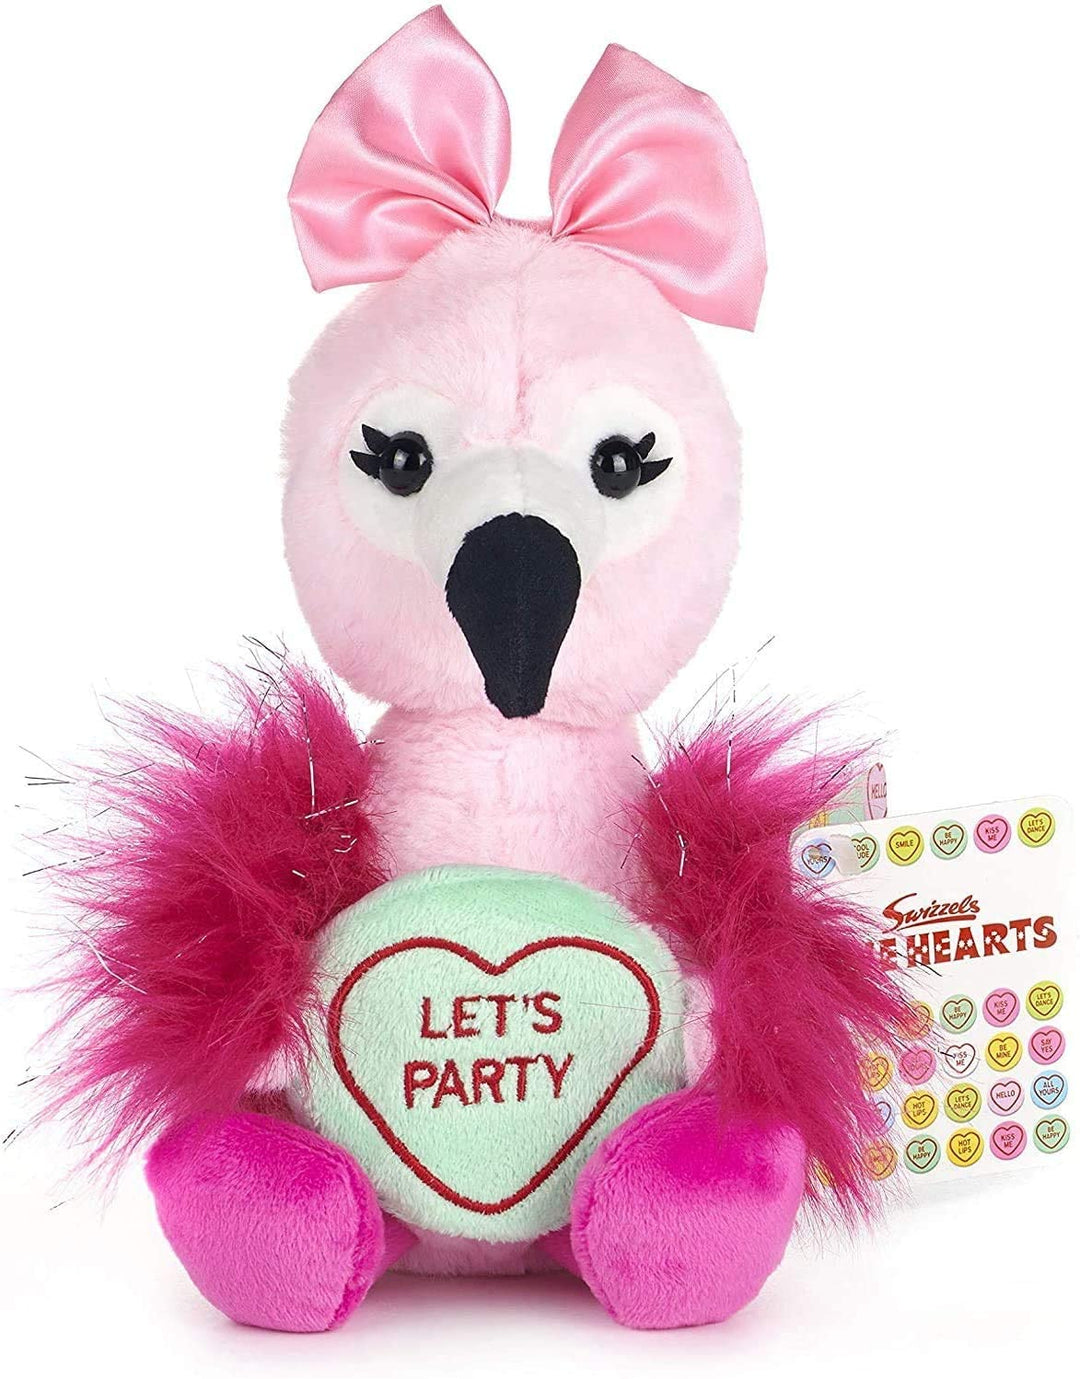 Posh Paws 37330 Swizzels Love Hearts 18cm (7 &quot;) Flamingo - Juguete de peluche con mensaje de fiesta, rosa